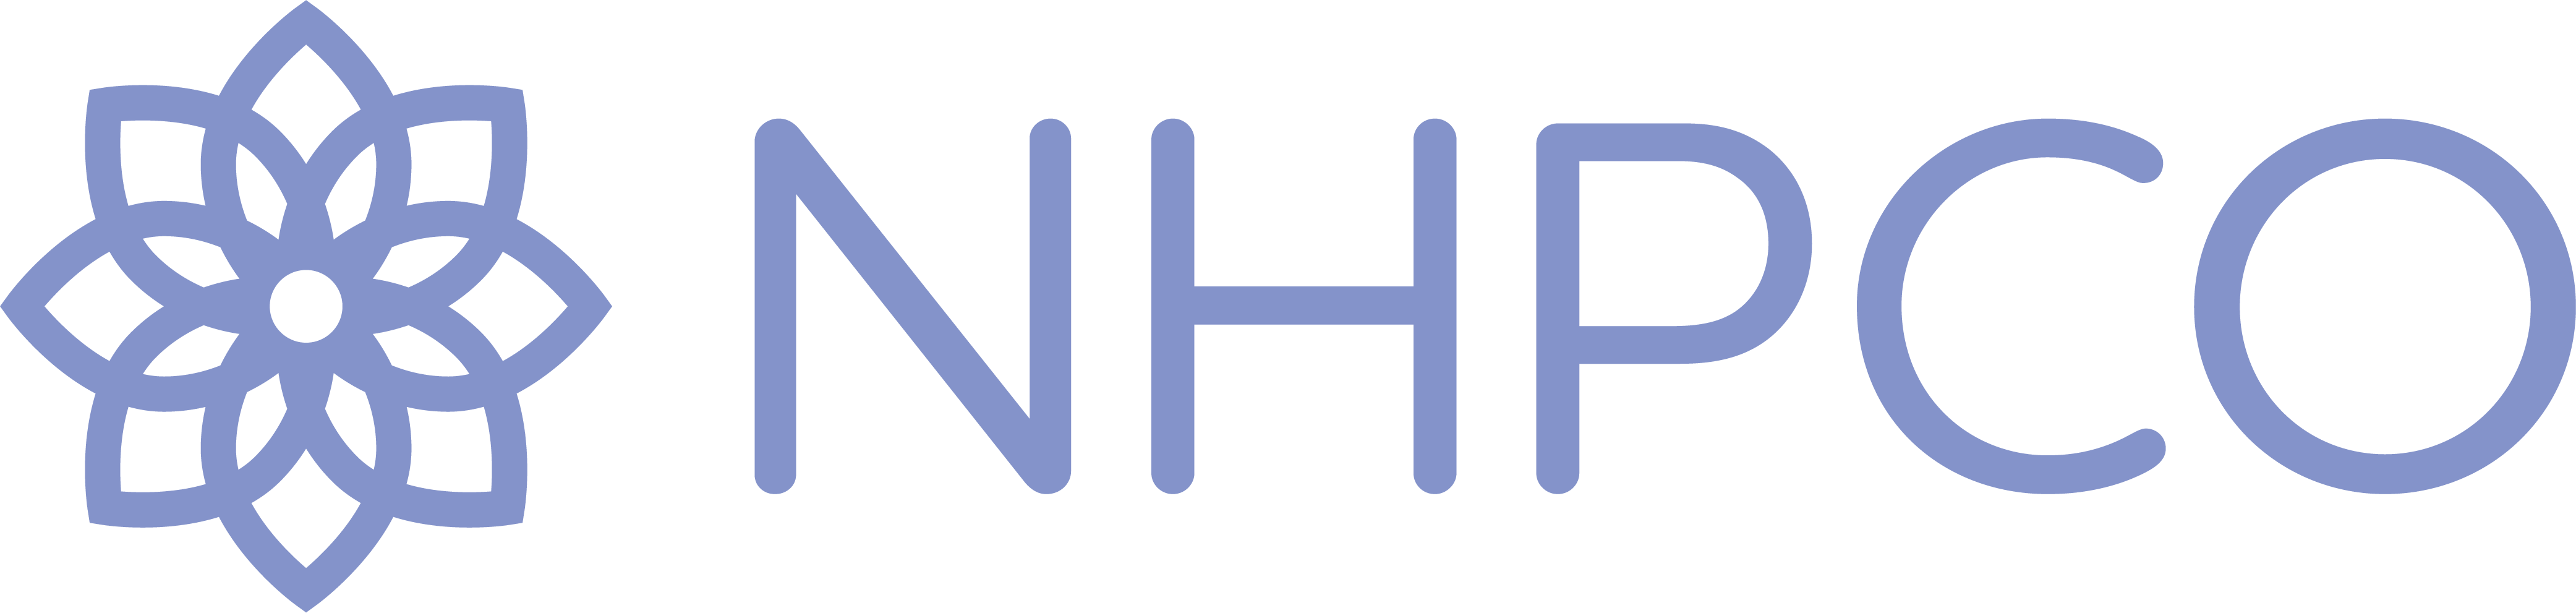 NHPCO Announces Winn